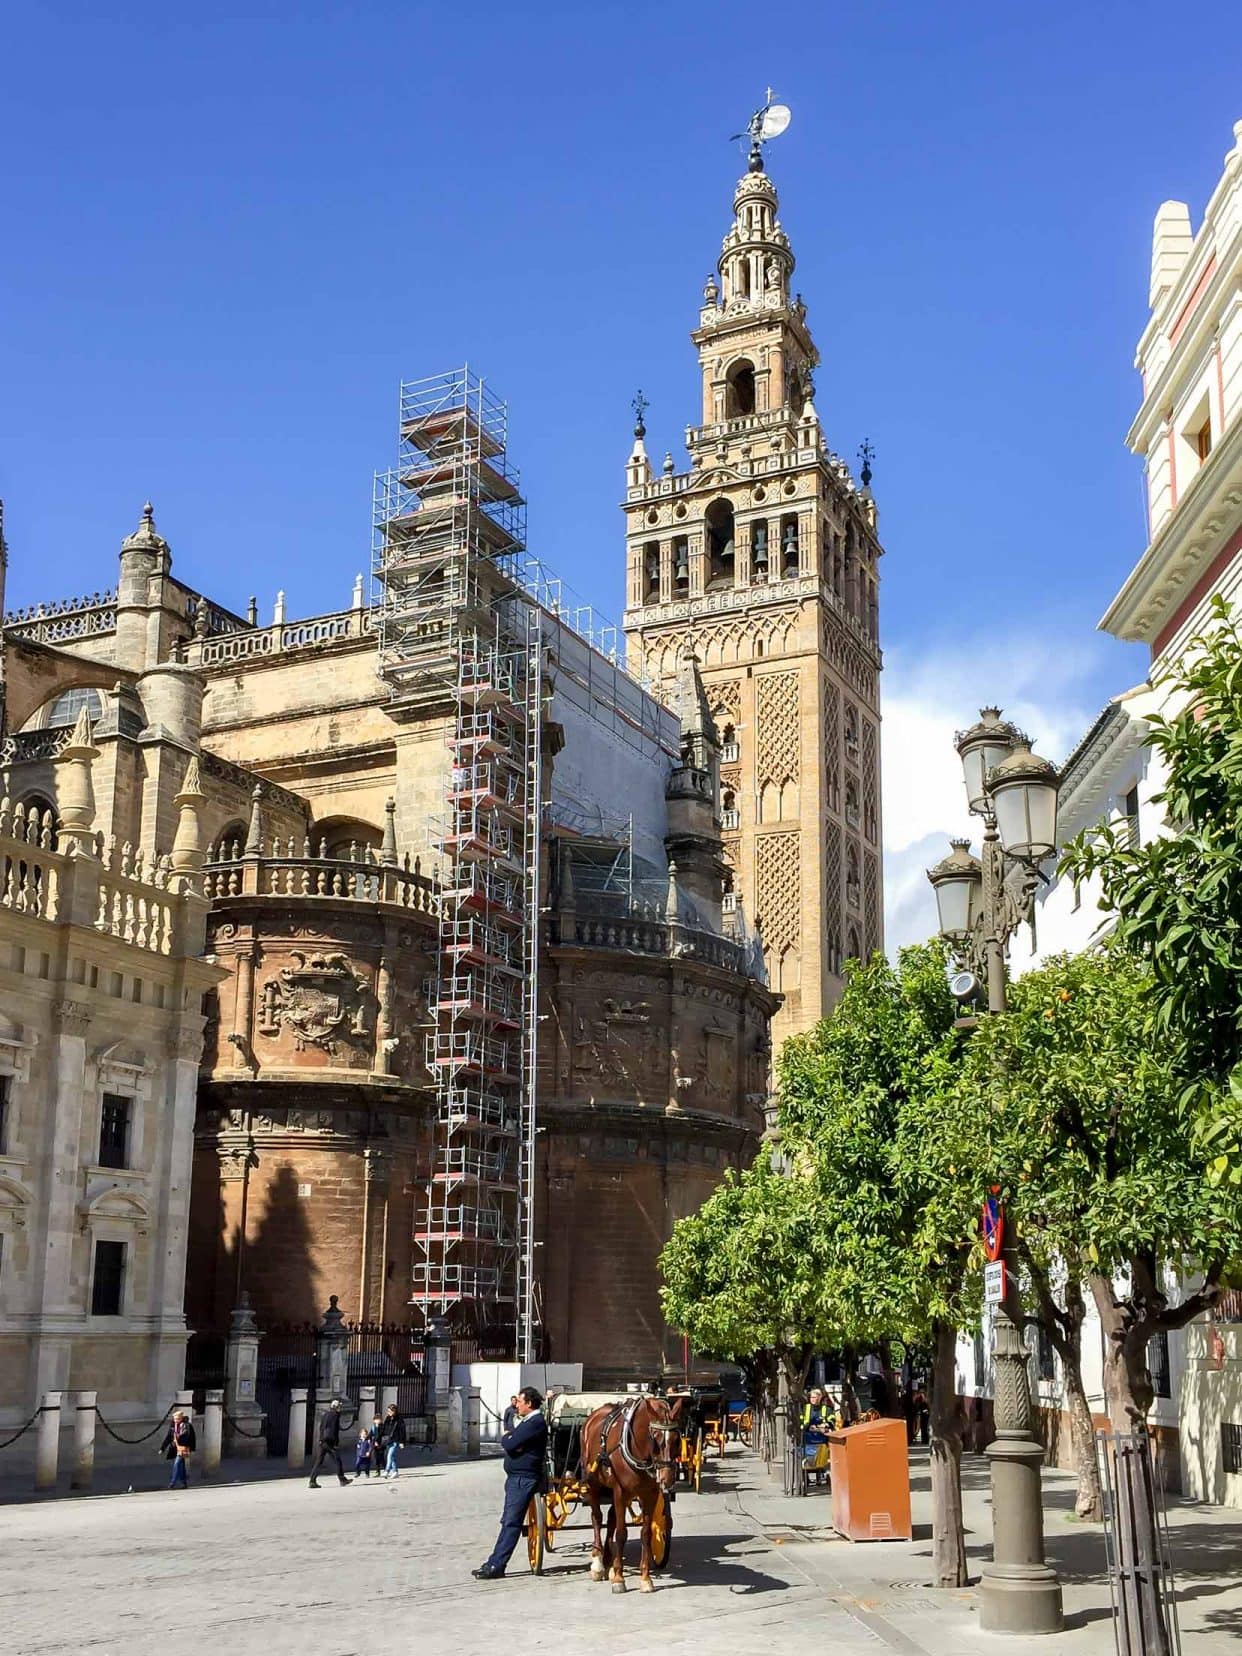 Cathedral of Santa Maria de la Sede de Sevilla